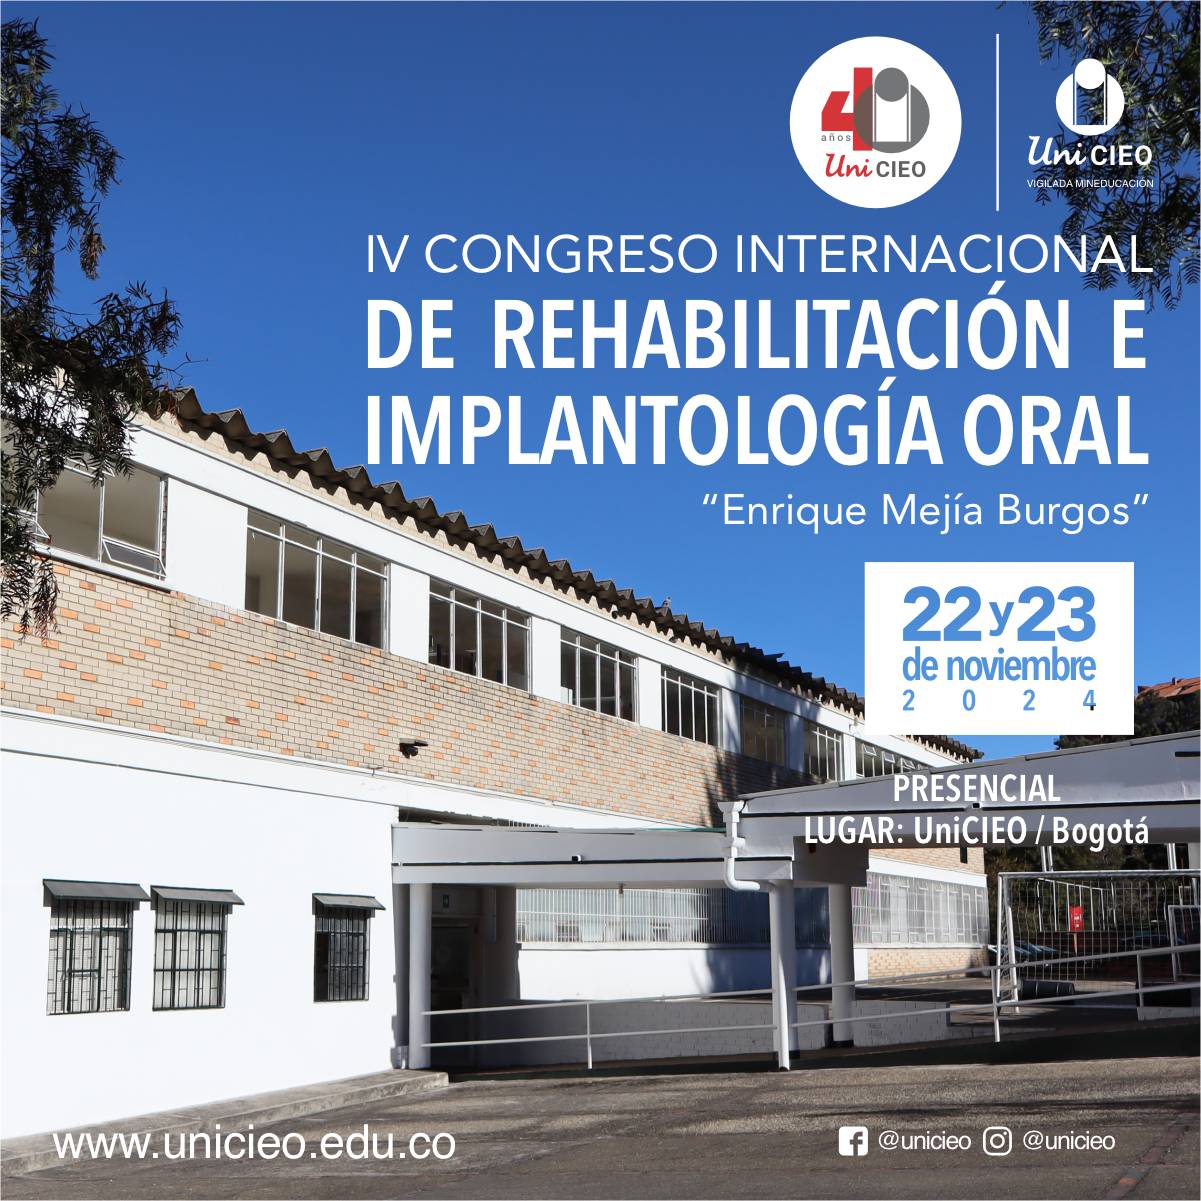 IV Congreso Internacional de Rehabilitación e Implantología Oral